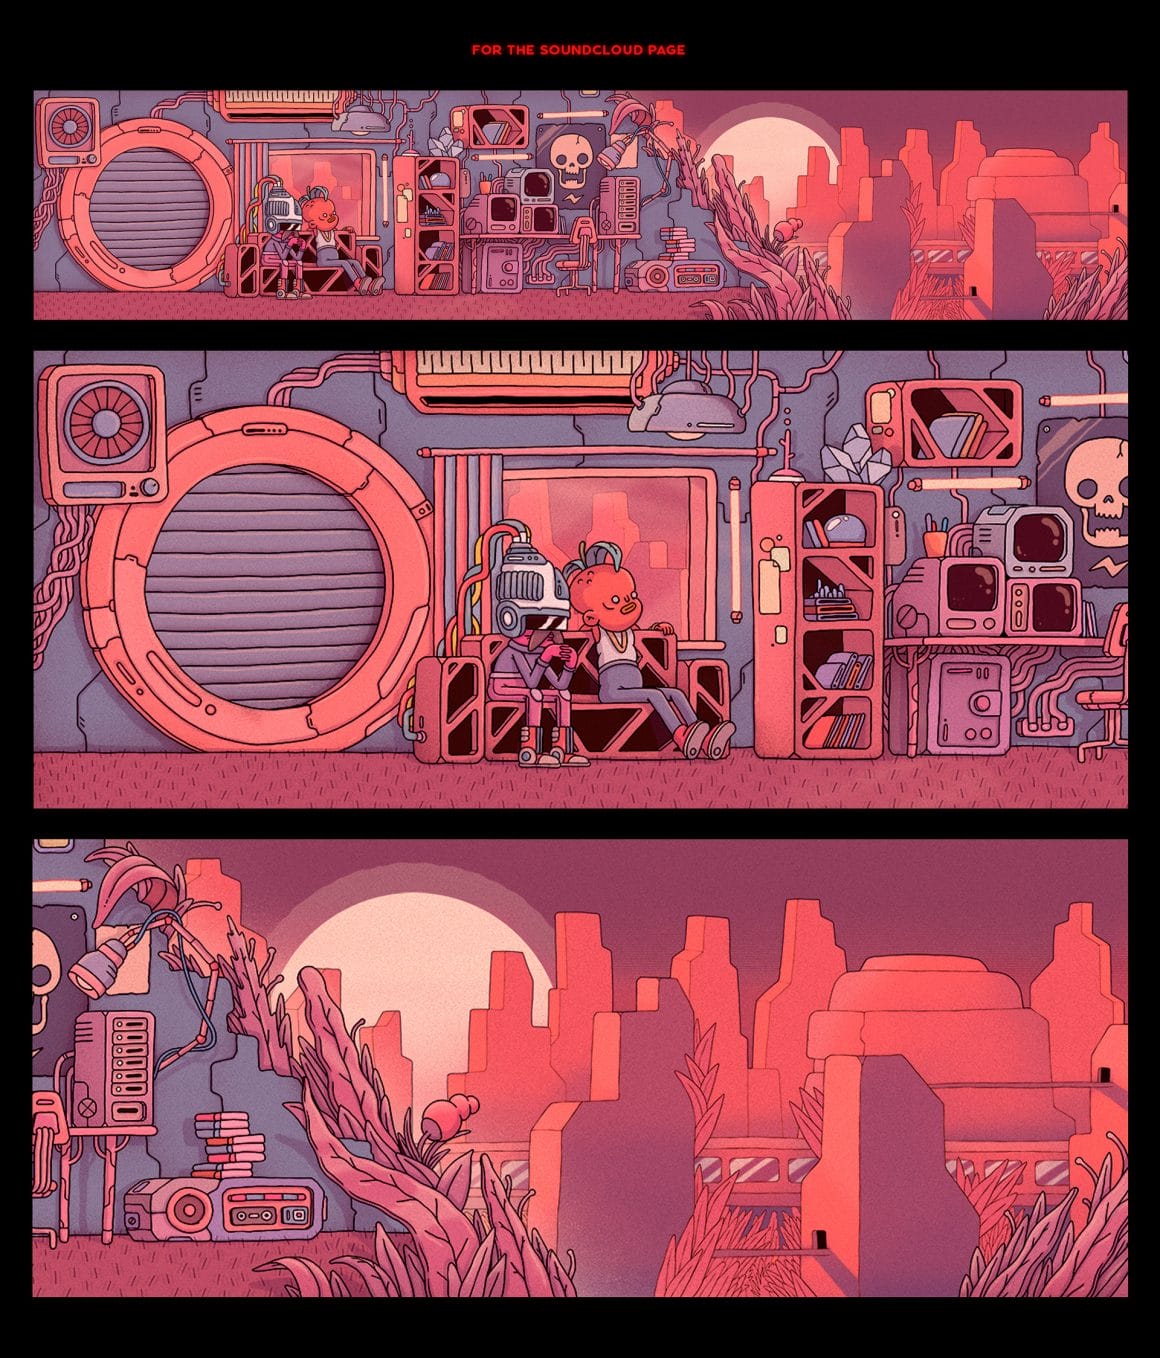 Trois bandes, une représentation d'un appartement avec deux personnages dans une vile de science-fiction en ruine. Un zoom sur les deux personnages, assis sur un canapé, un zoom sur la ville avec le soleil qui se couche.